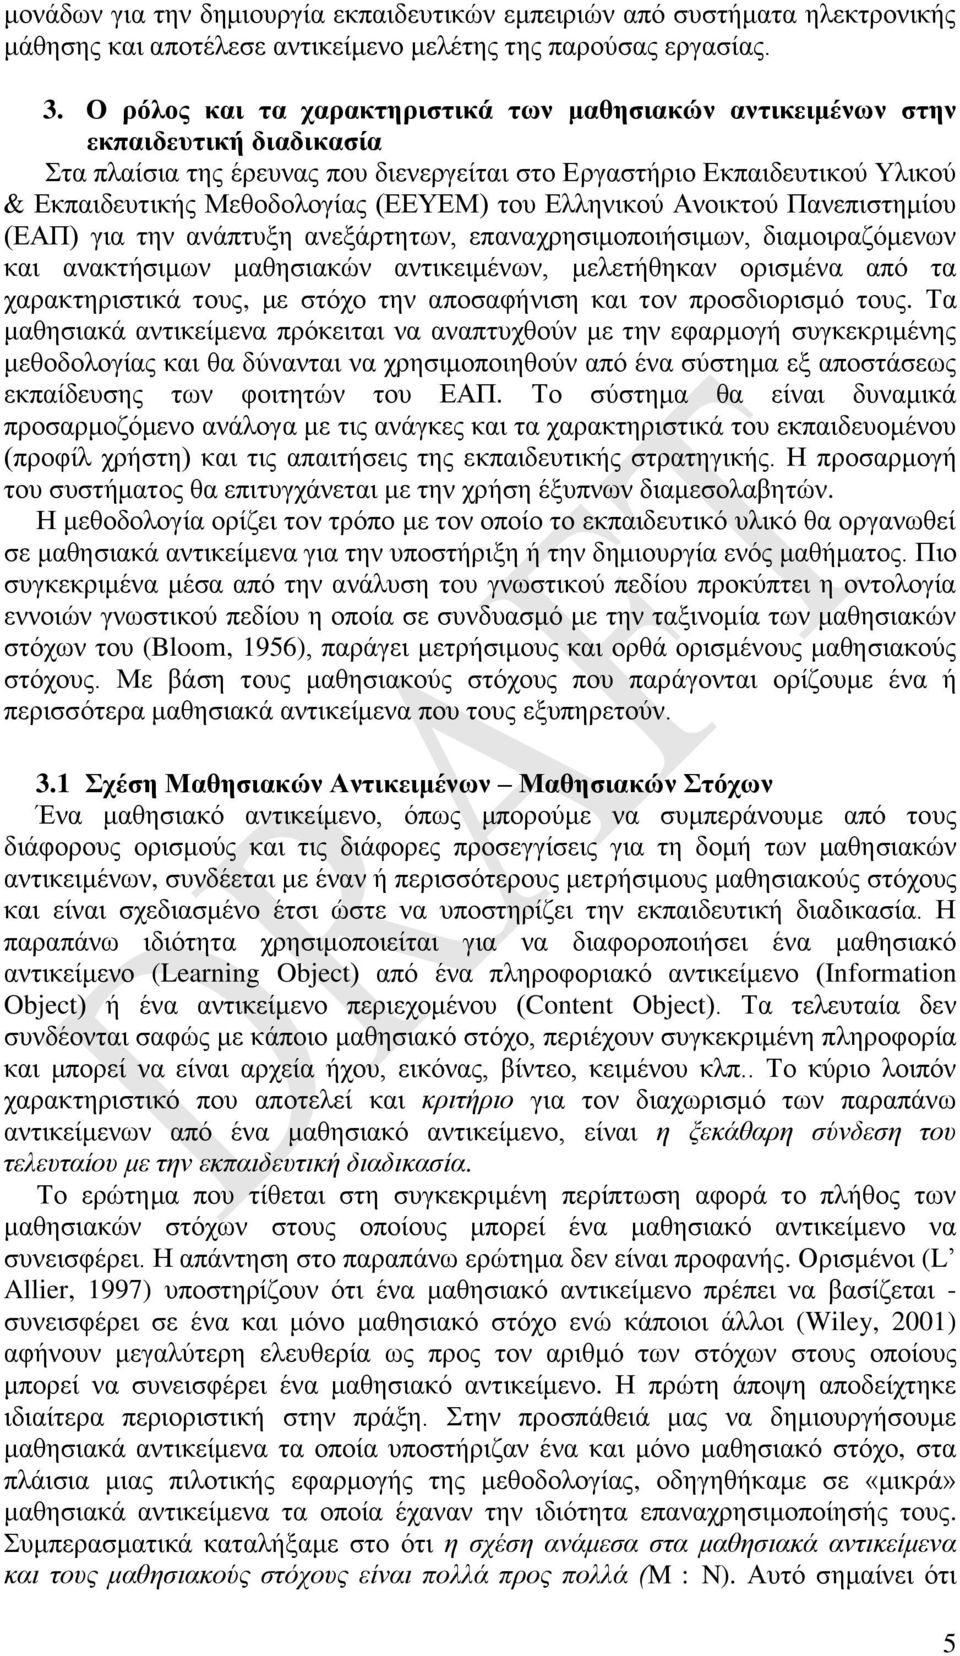 (ΕΕΥΕΜ) του Ελληνικού Ανοικτού Πανεπιστημίου (ΕΑΠ) για την ανάπτυξη ανεξάρτητων, επαναχρησιμοποιήσιμων, διαμοιραζόμενων και ανακτήσιμων μαθησιακών αντικειμένων, μελετήθηκαν ορισμένα από τα